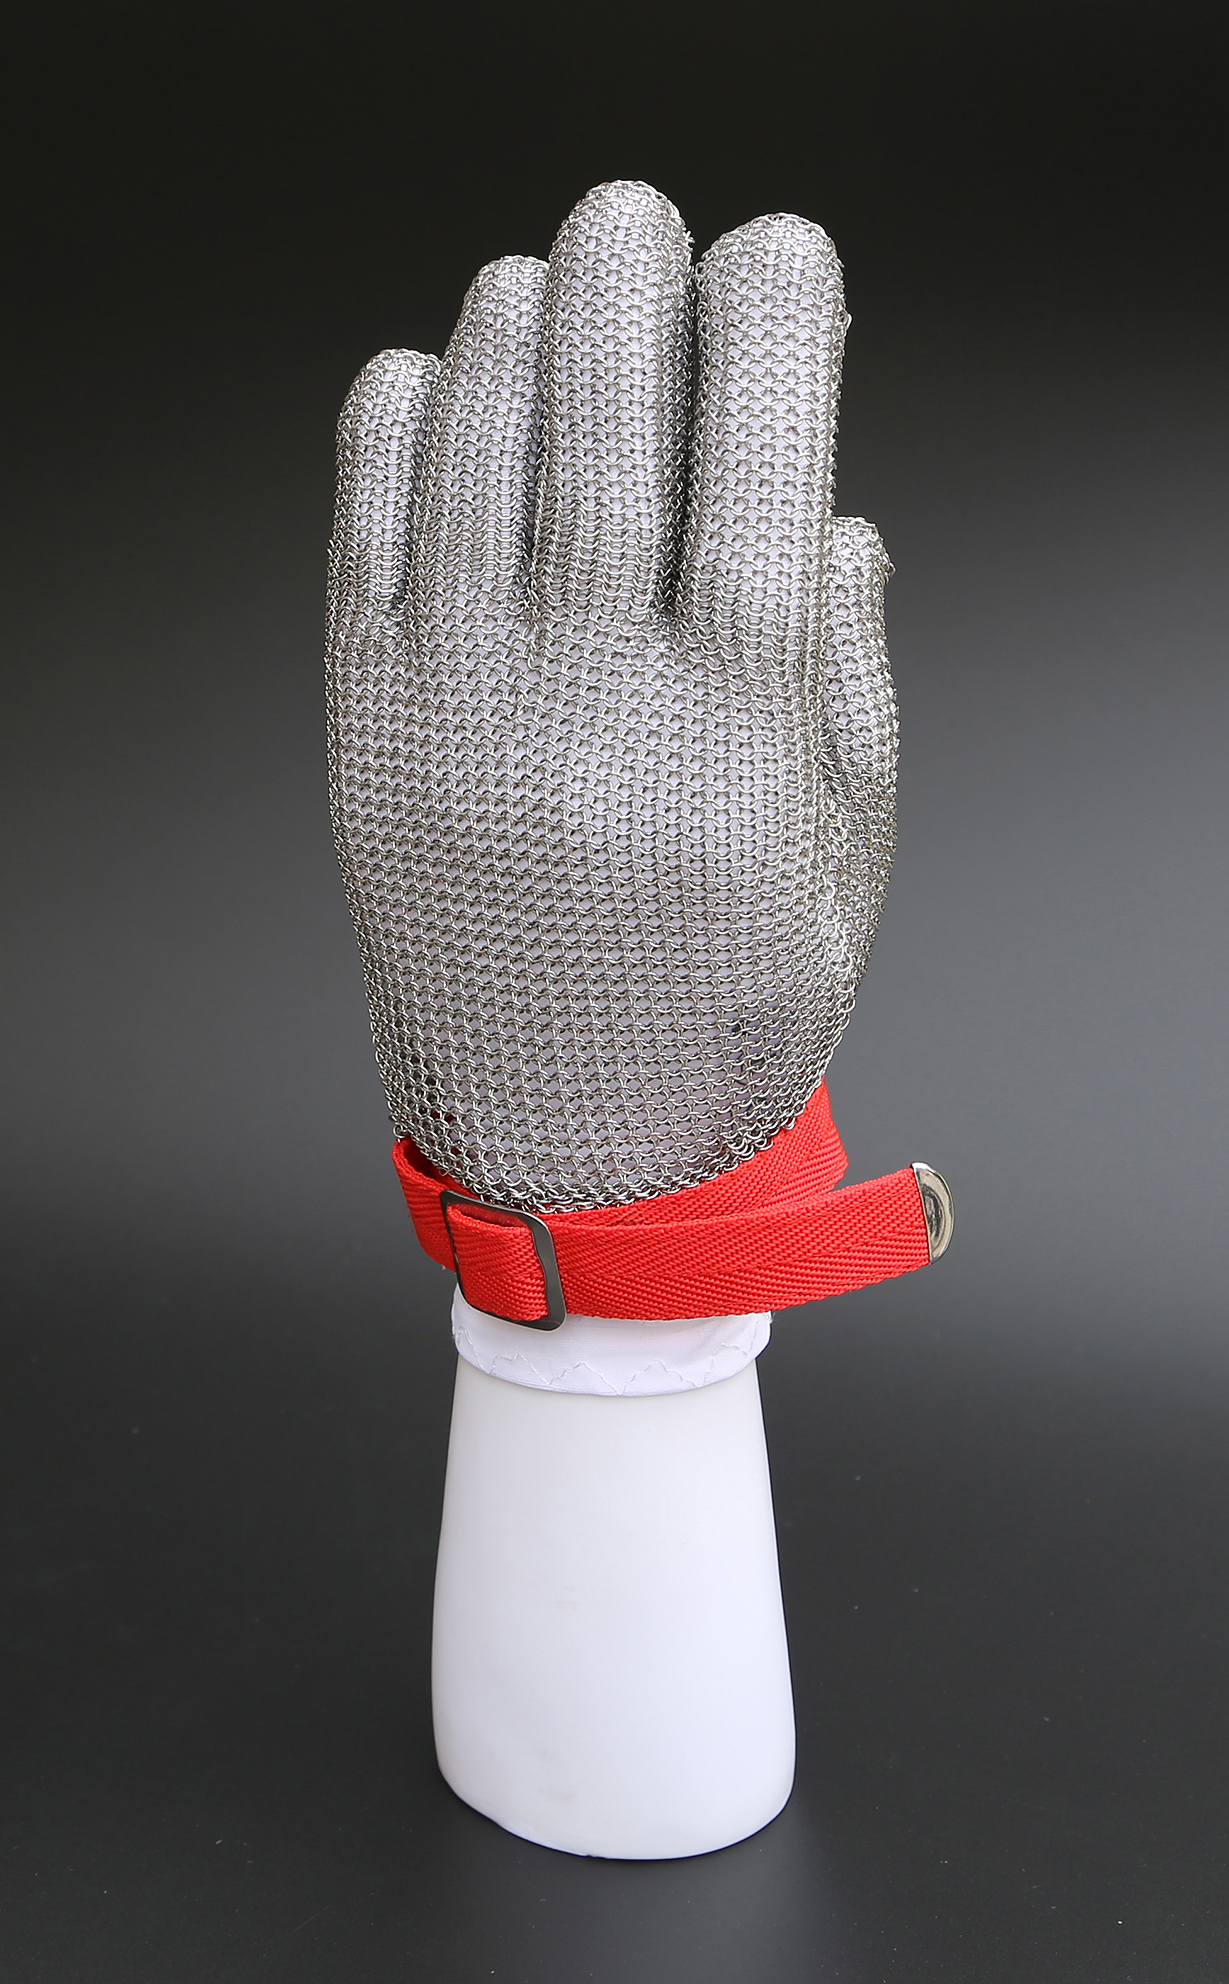 厂家供应不锈钢手套 厂家供应不锈钢防割手套